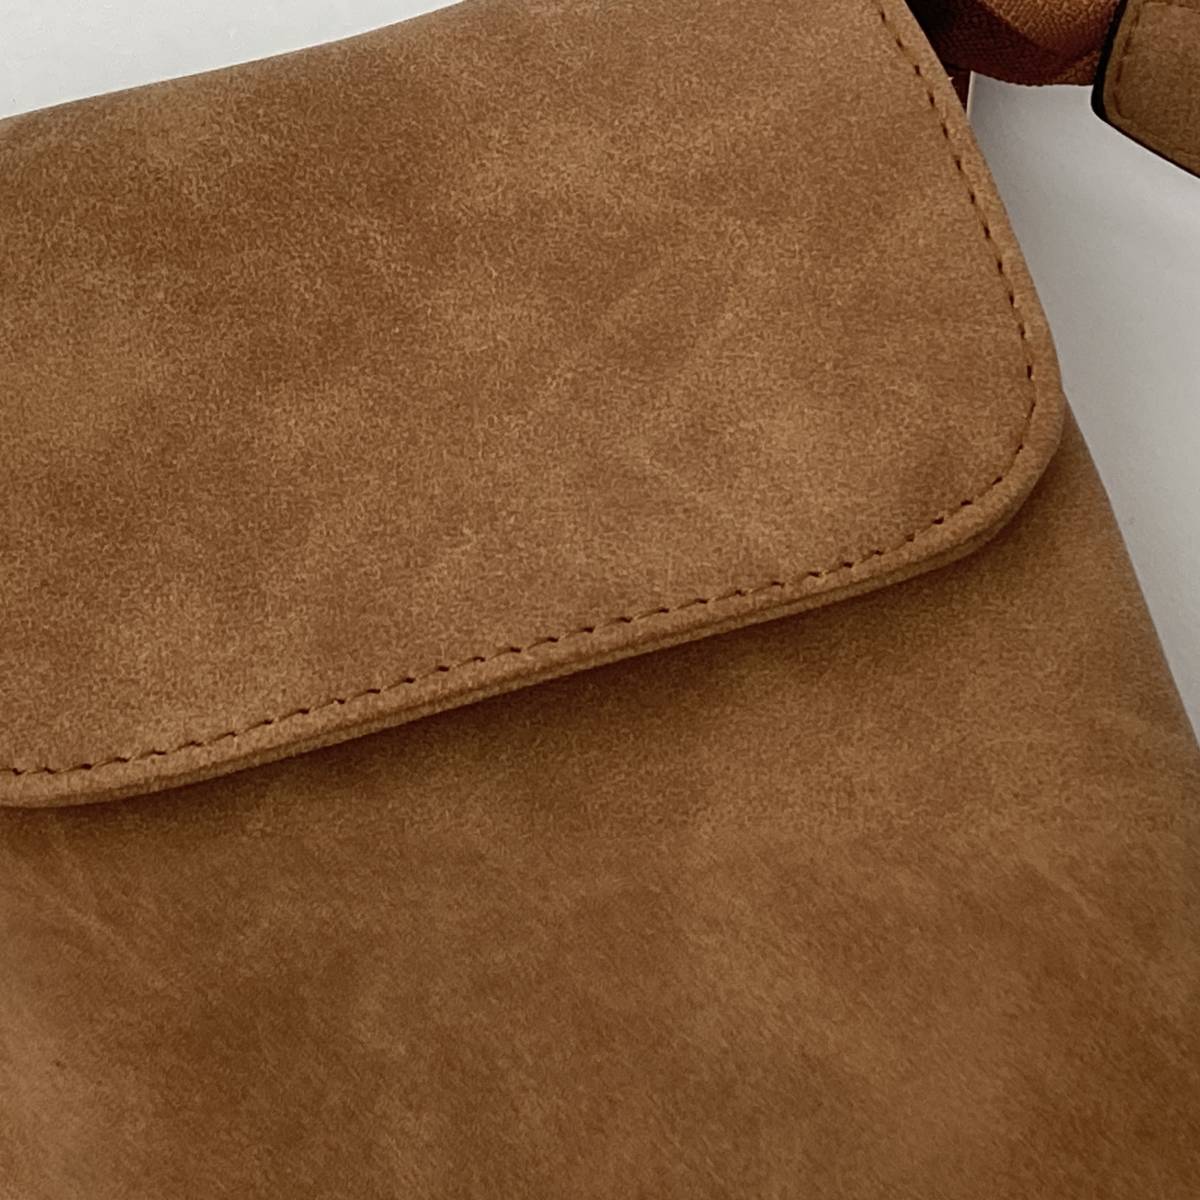 #353 smartphone shoulder Mini purse smartphone pouch bag pochette diagonal .. Brown casual pretty stylish lady's 